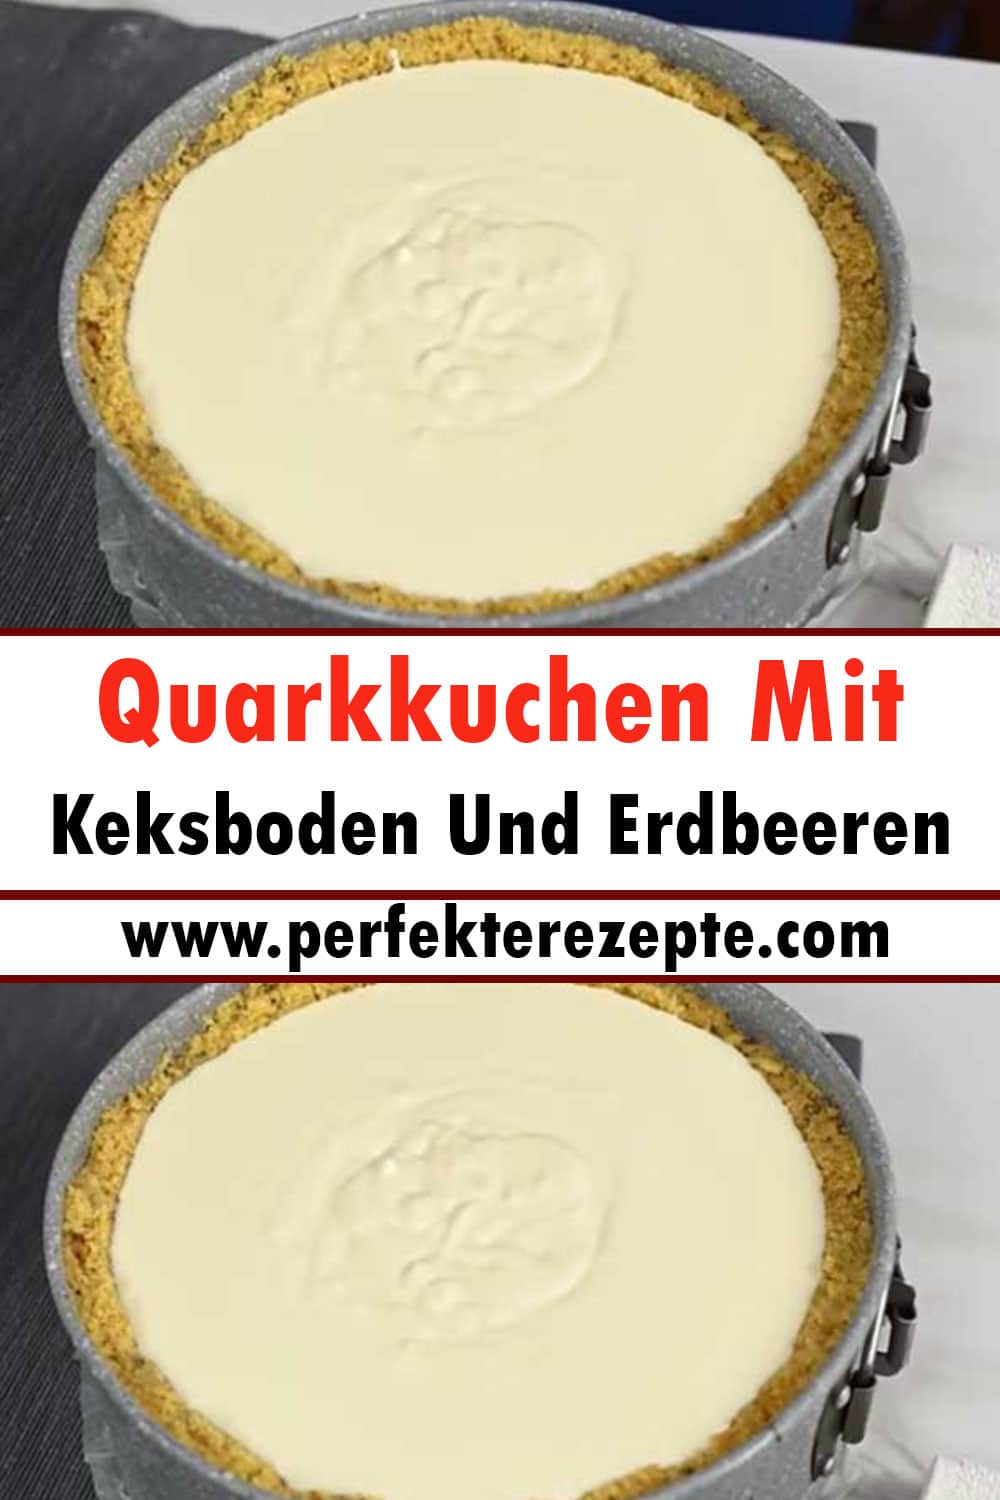 Quarkkuchen Mit Keksboden Und Erdbeeren Rezept